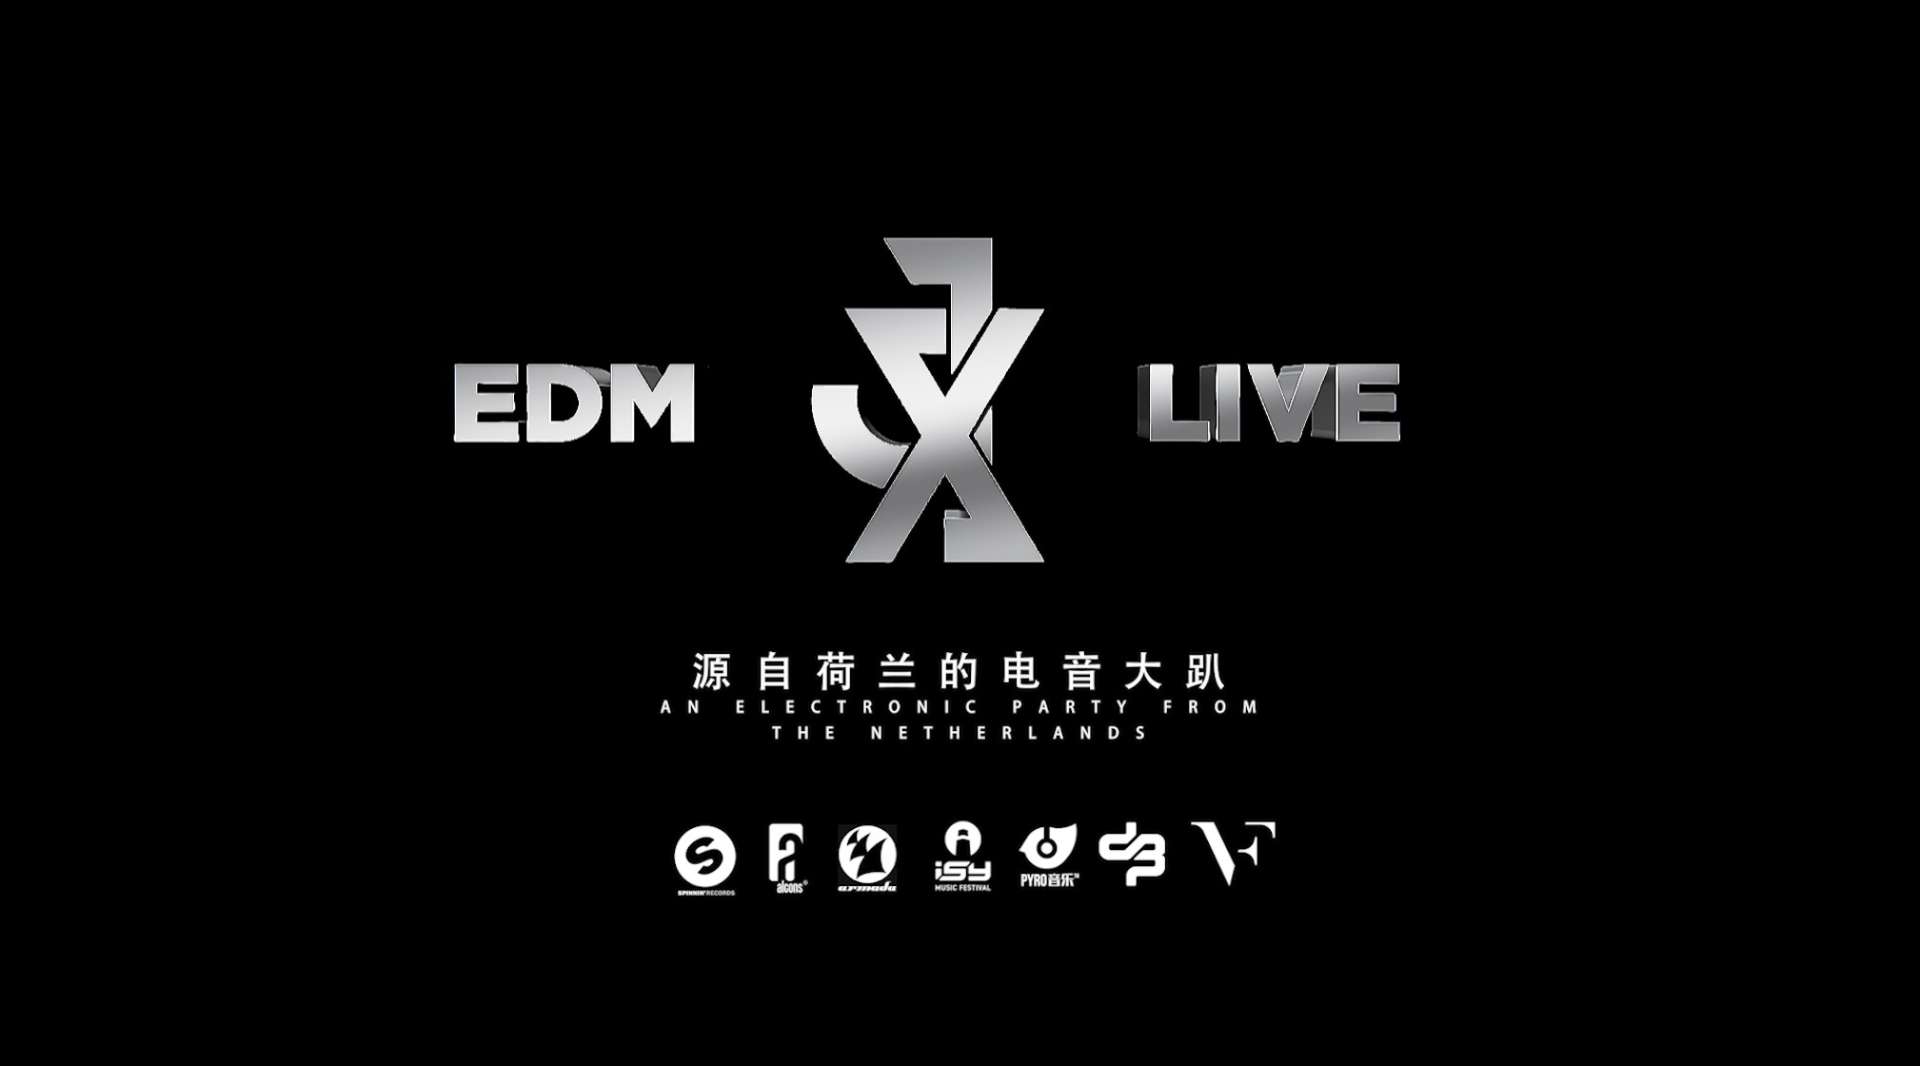 JX EDM LIVE电音剧场落户玉林